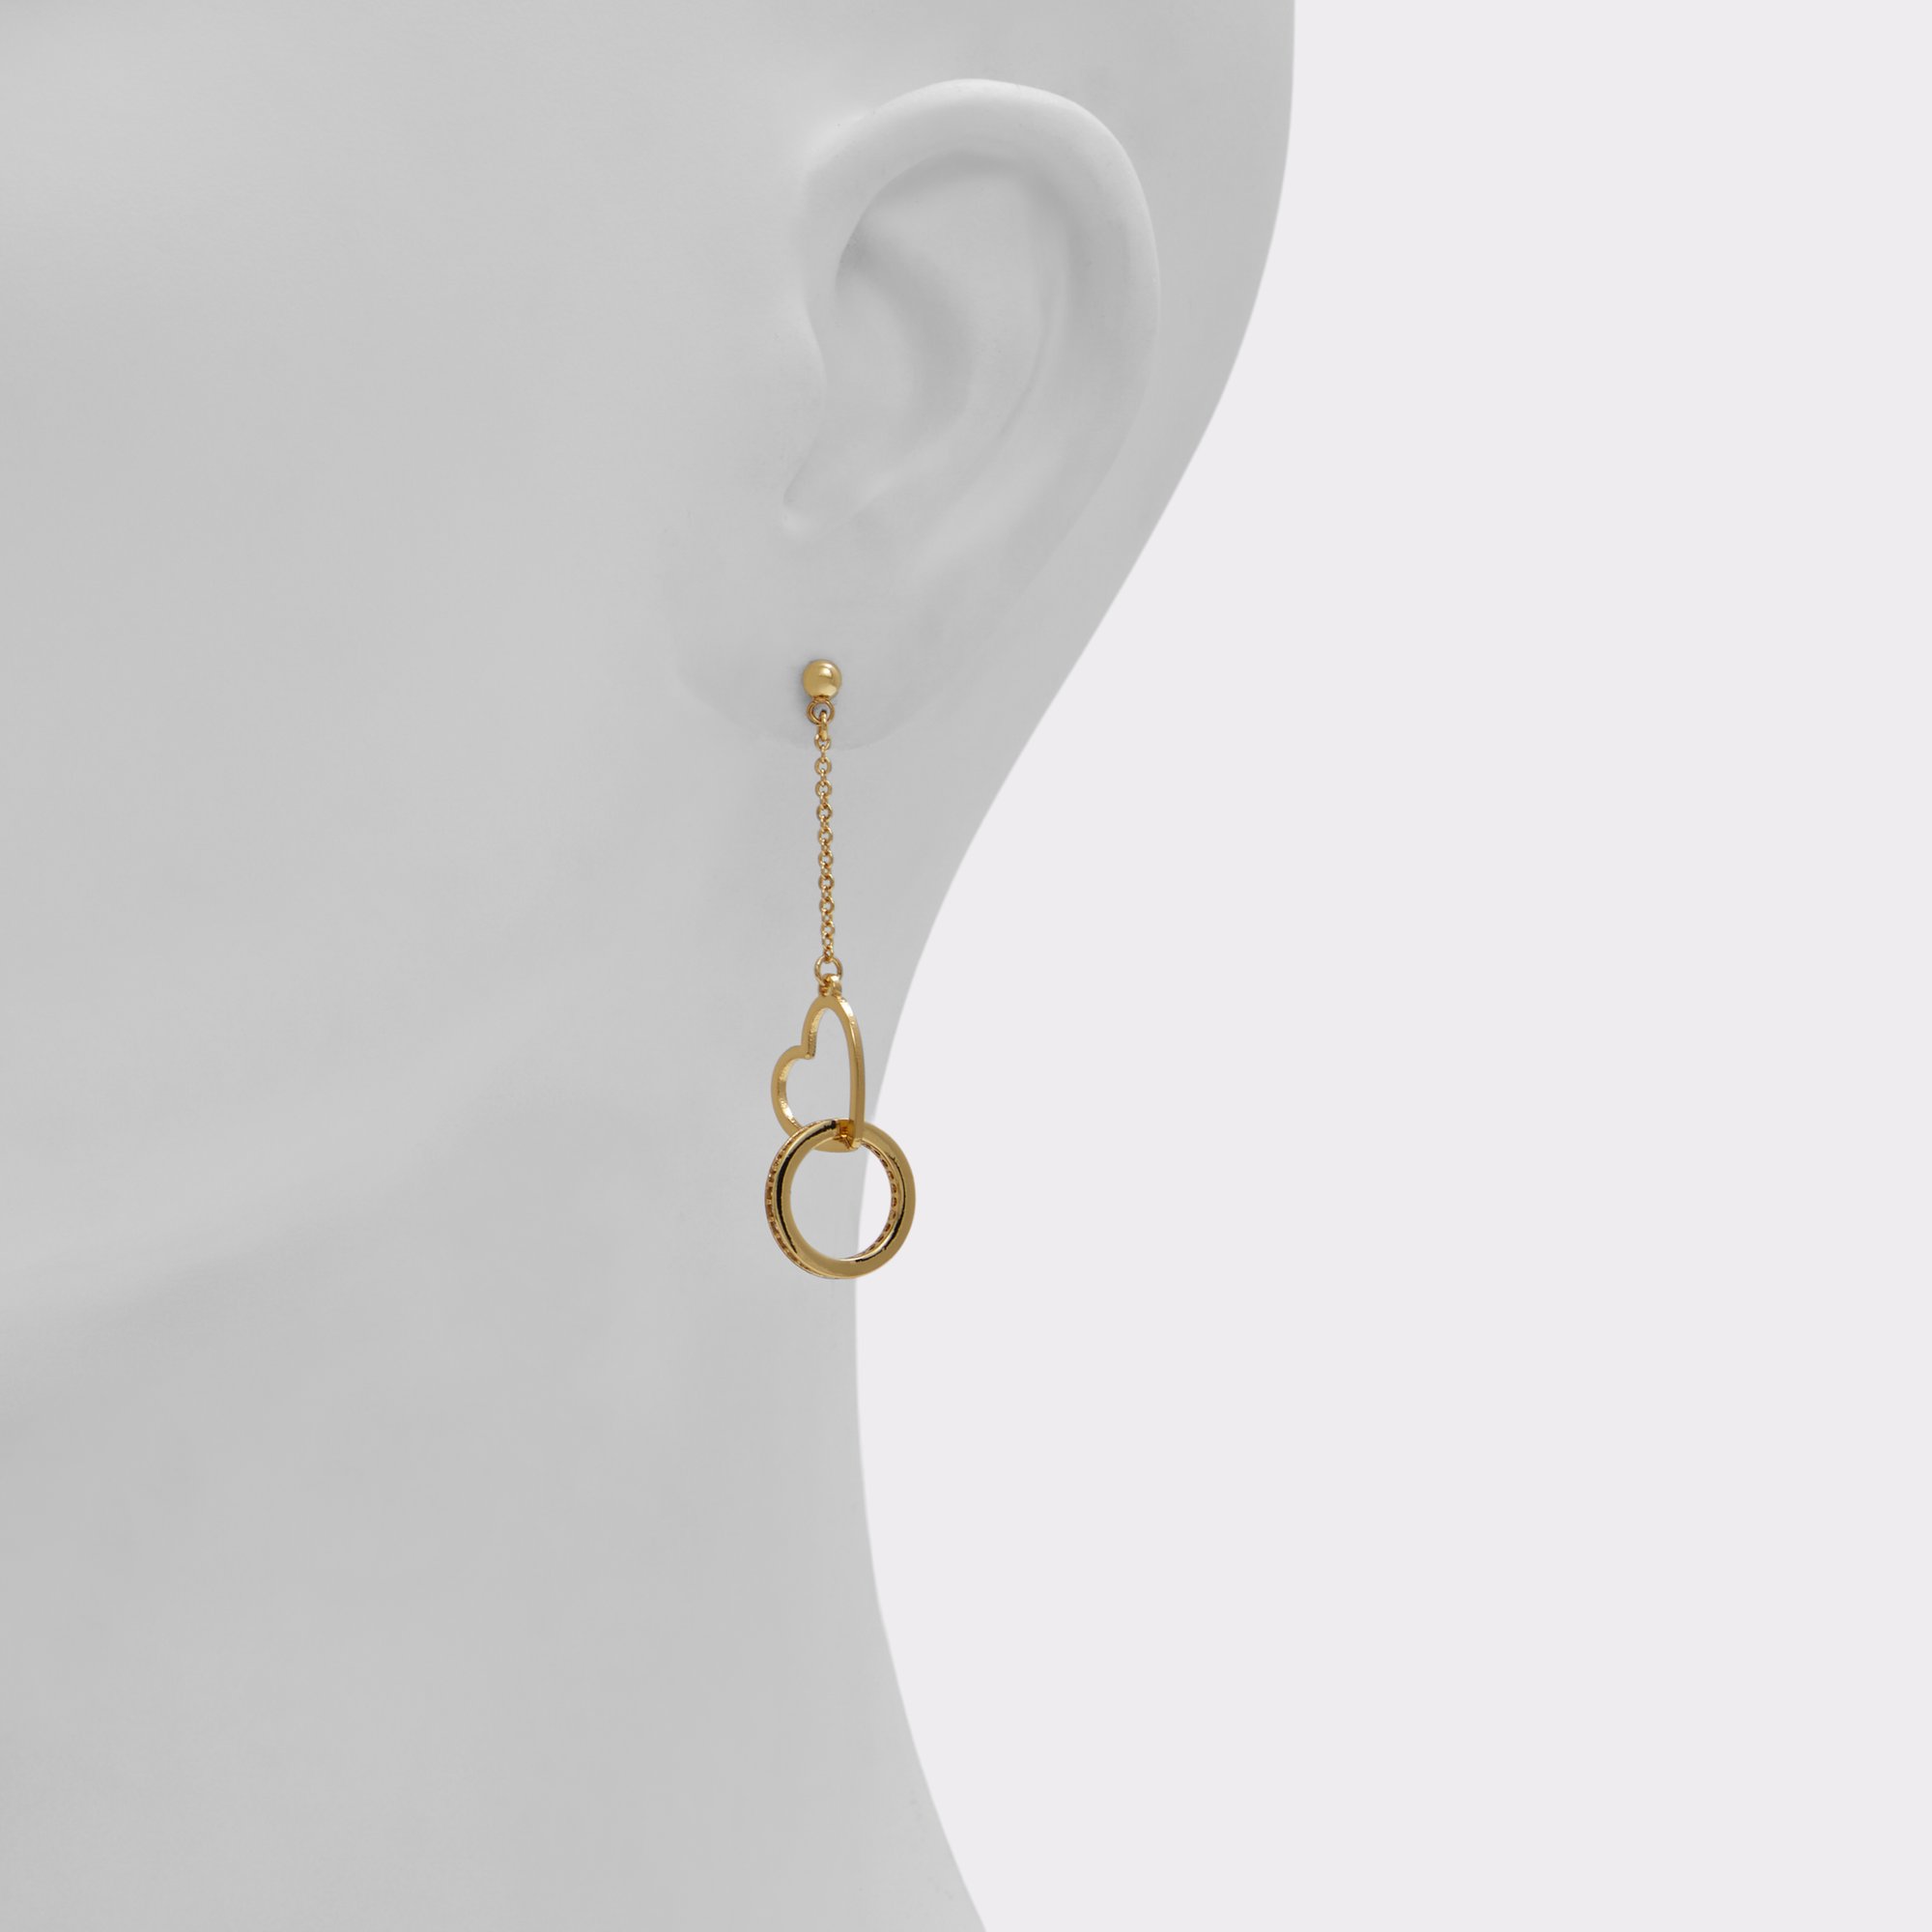 Lovecharm Gold/Clear Multi Women's Earrings | ALDO Canada